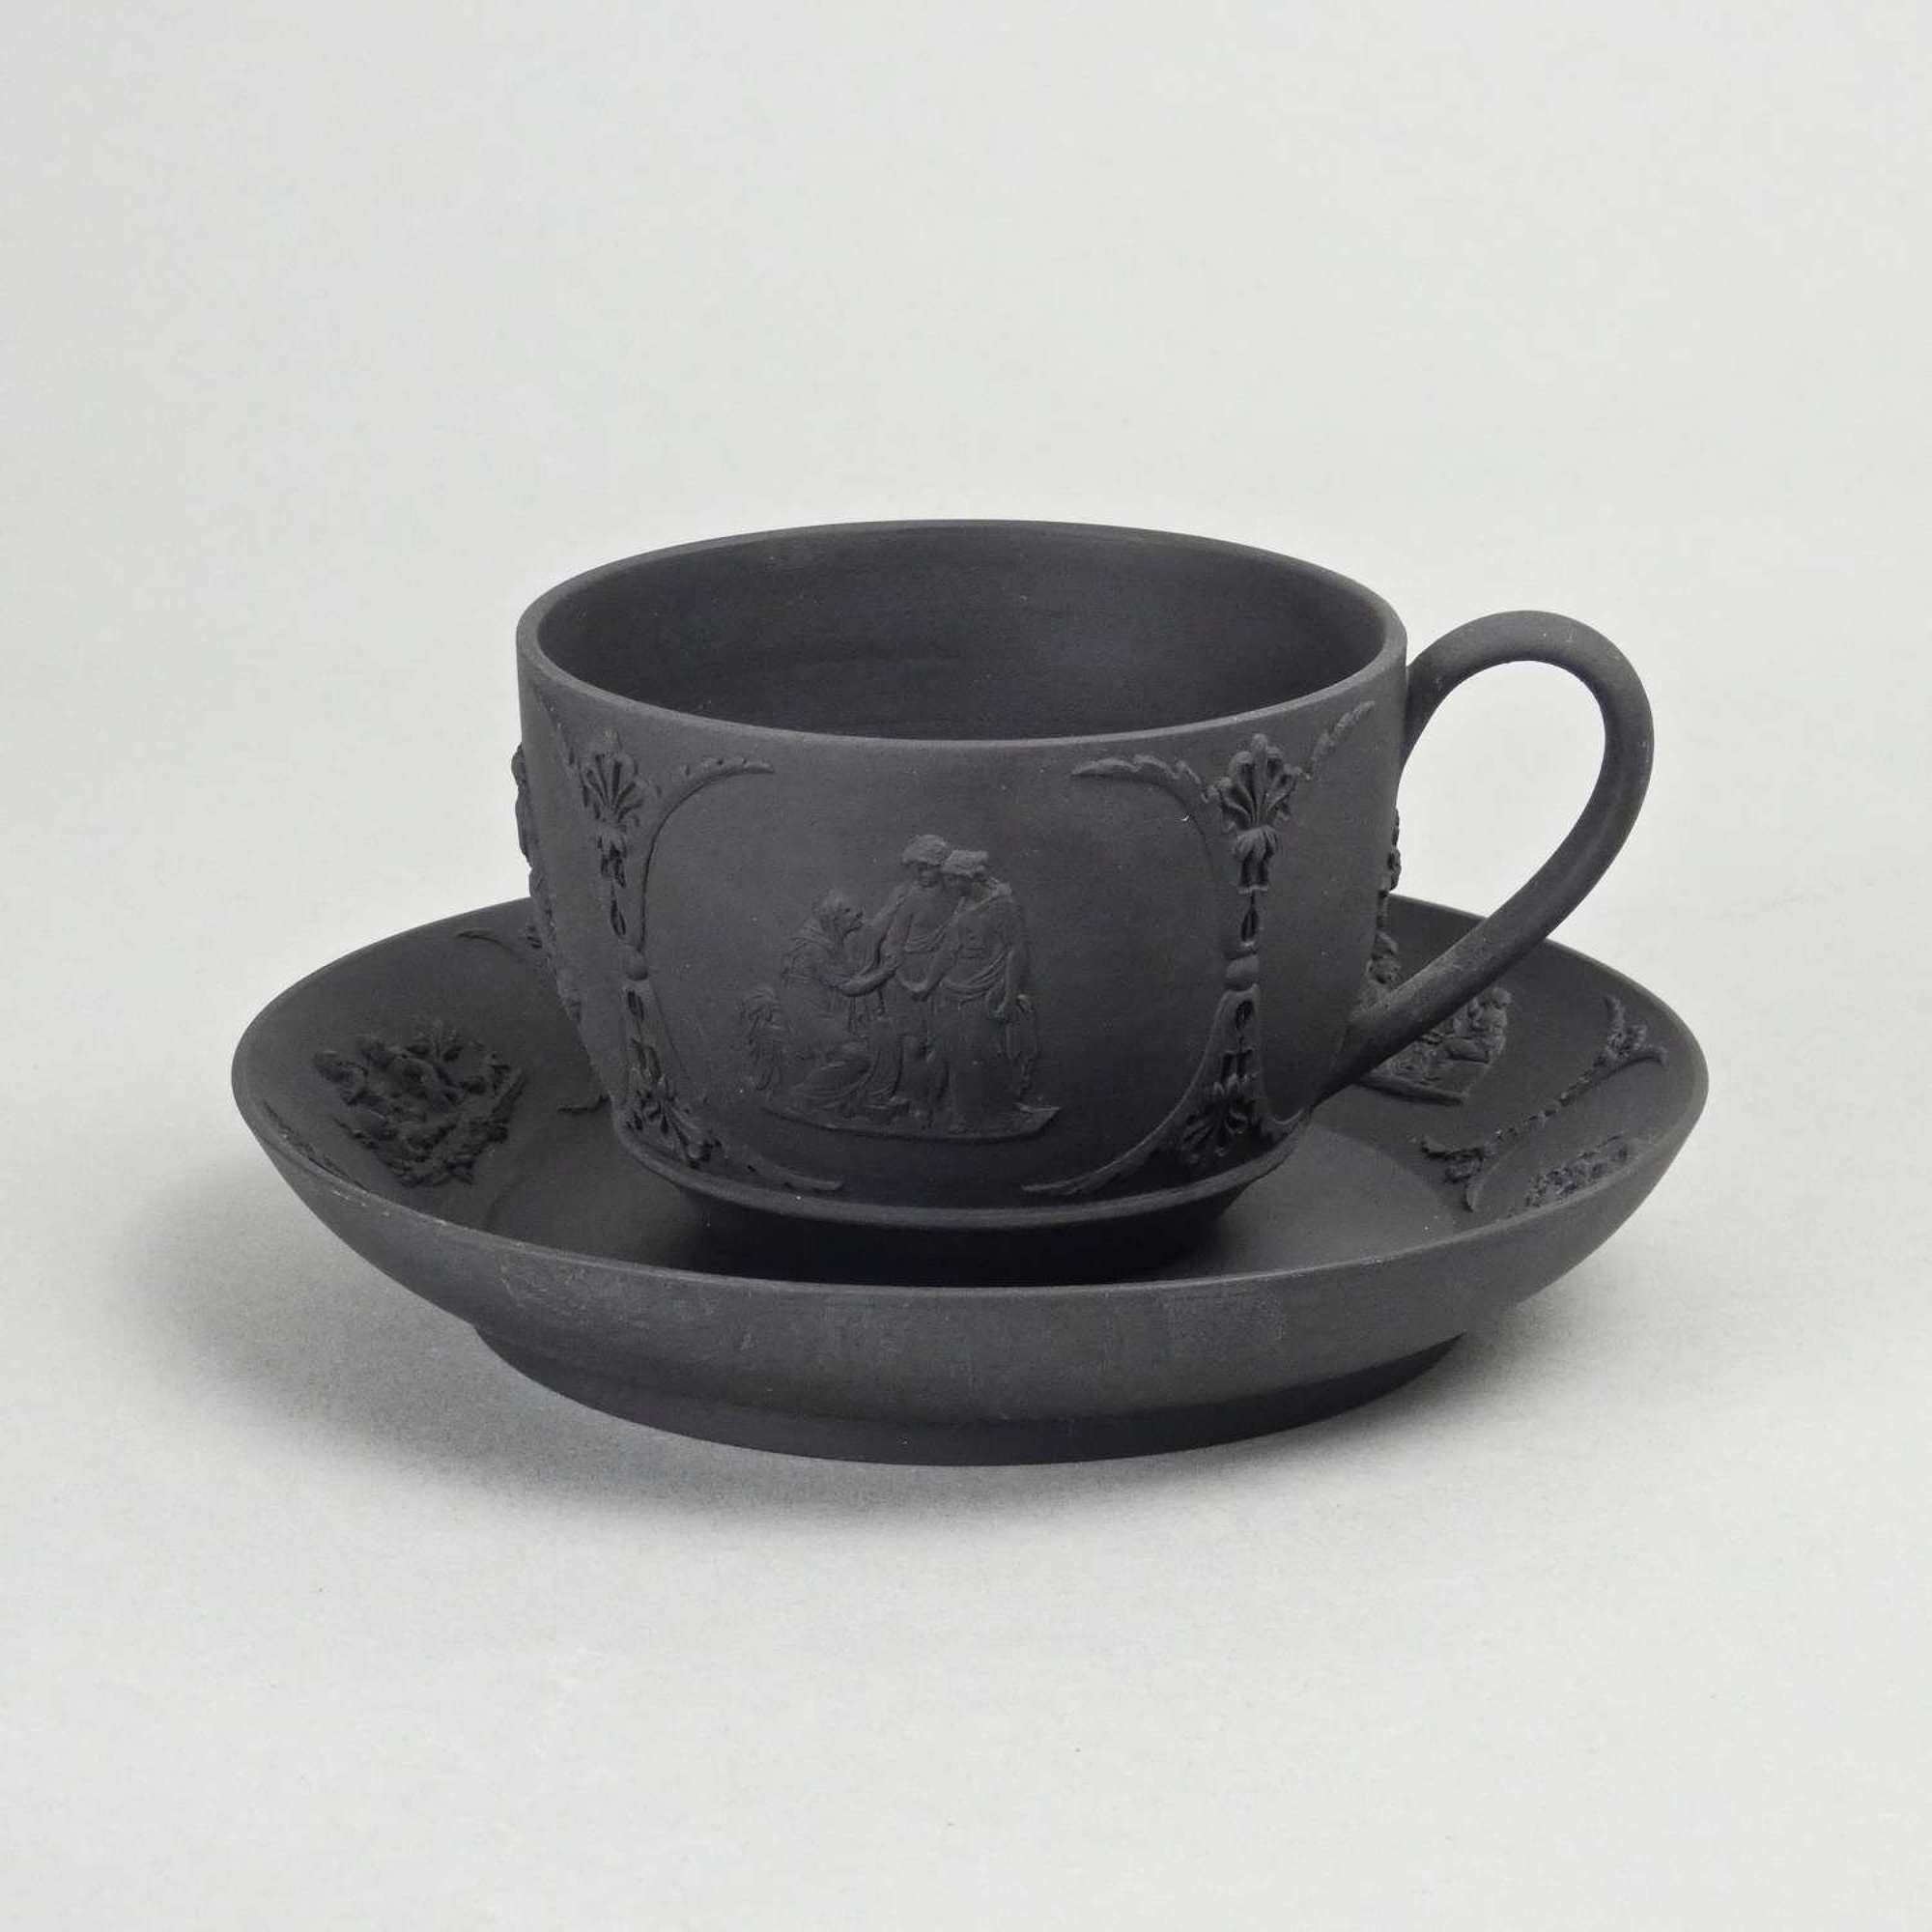 Basalt cup and saucer